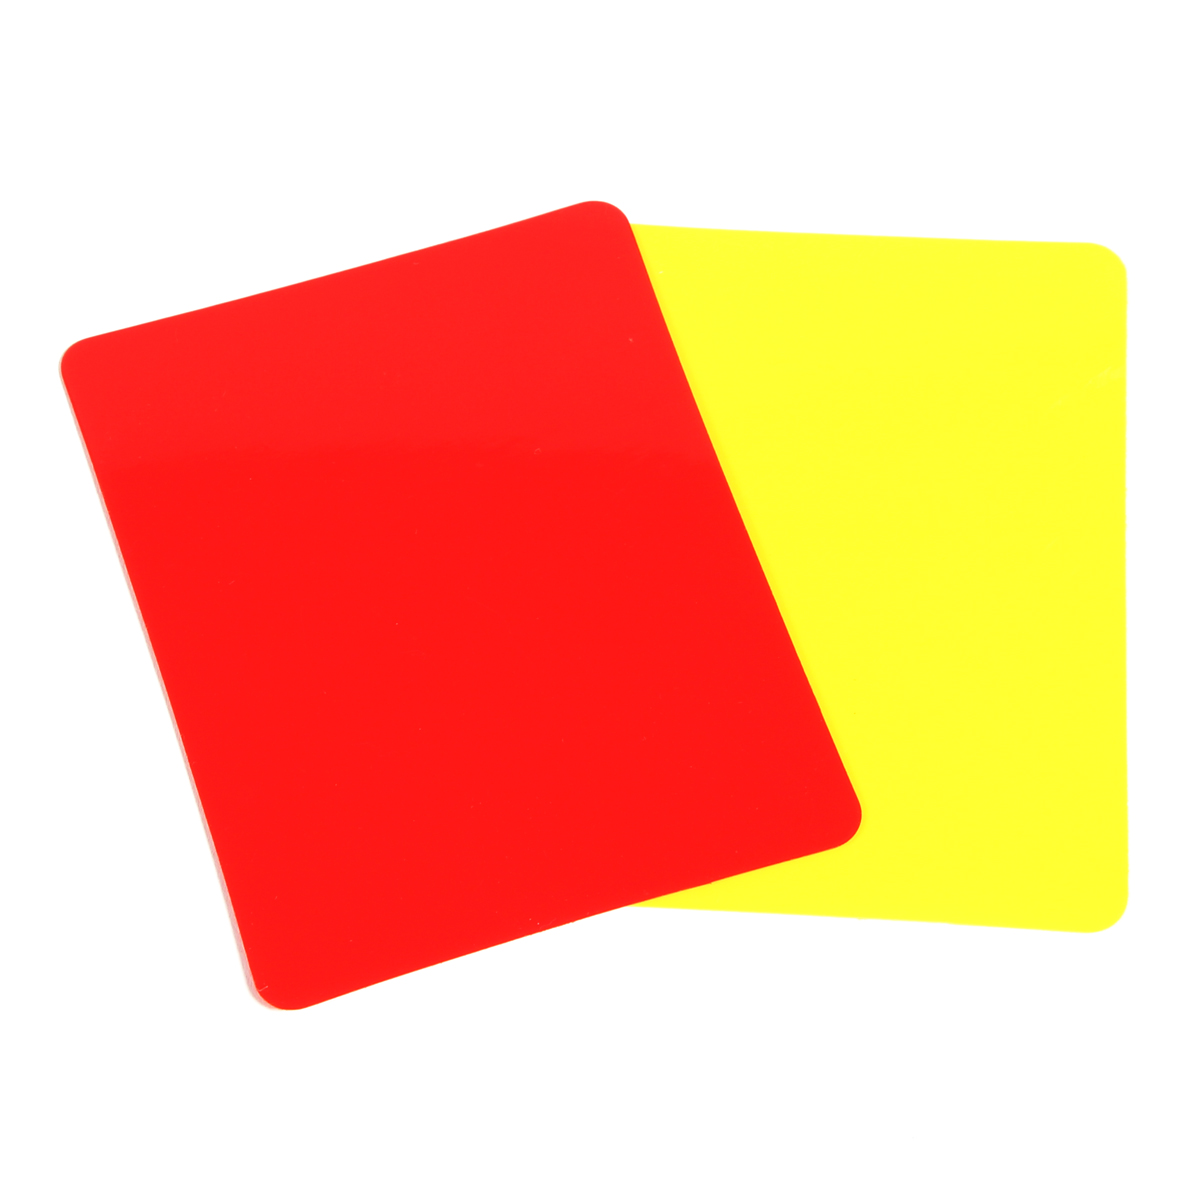 Tarjetas De Árbitro De Pvc (juego De 2, 1 Roja Y 1 Amarilla) - multicolor - 